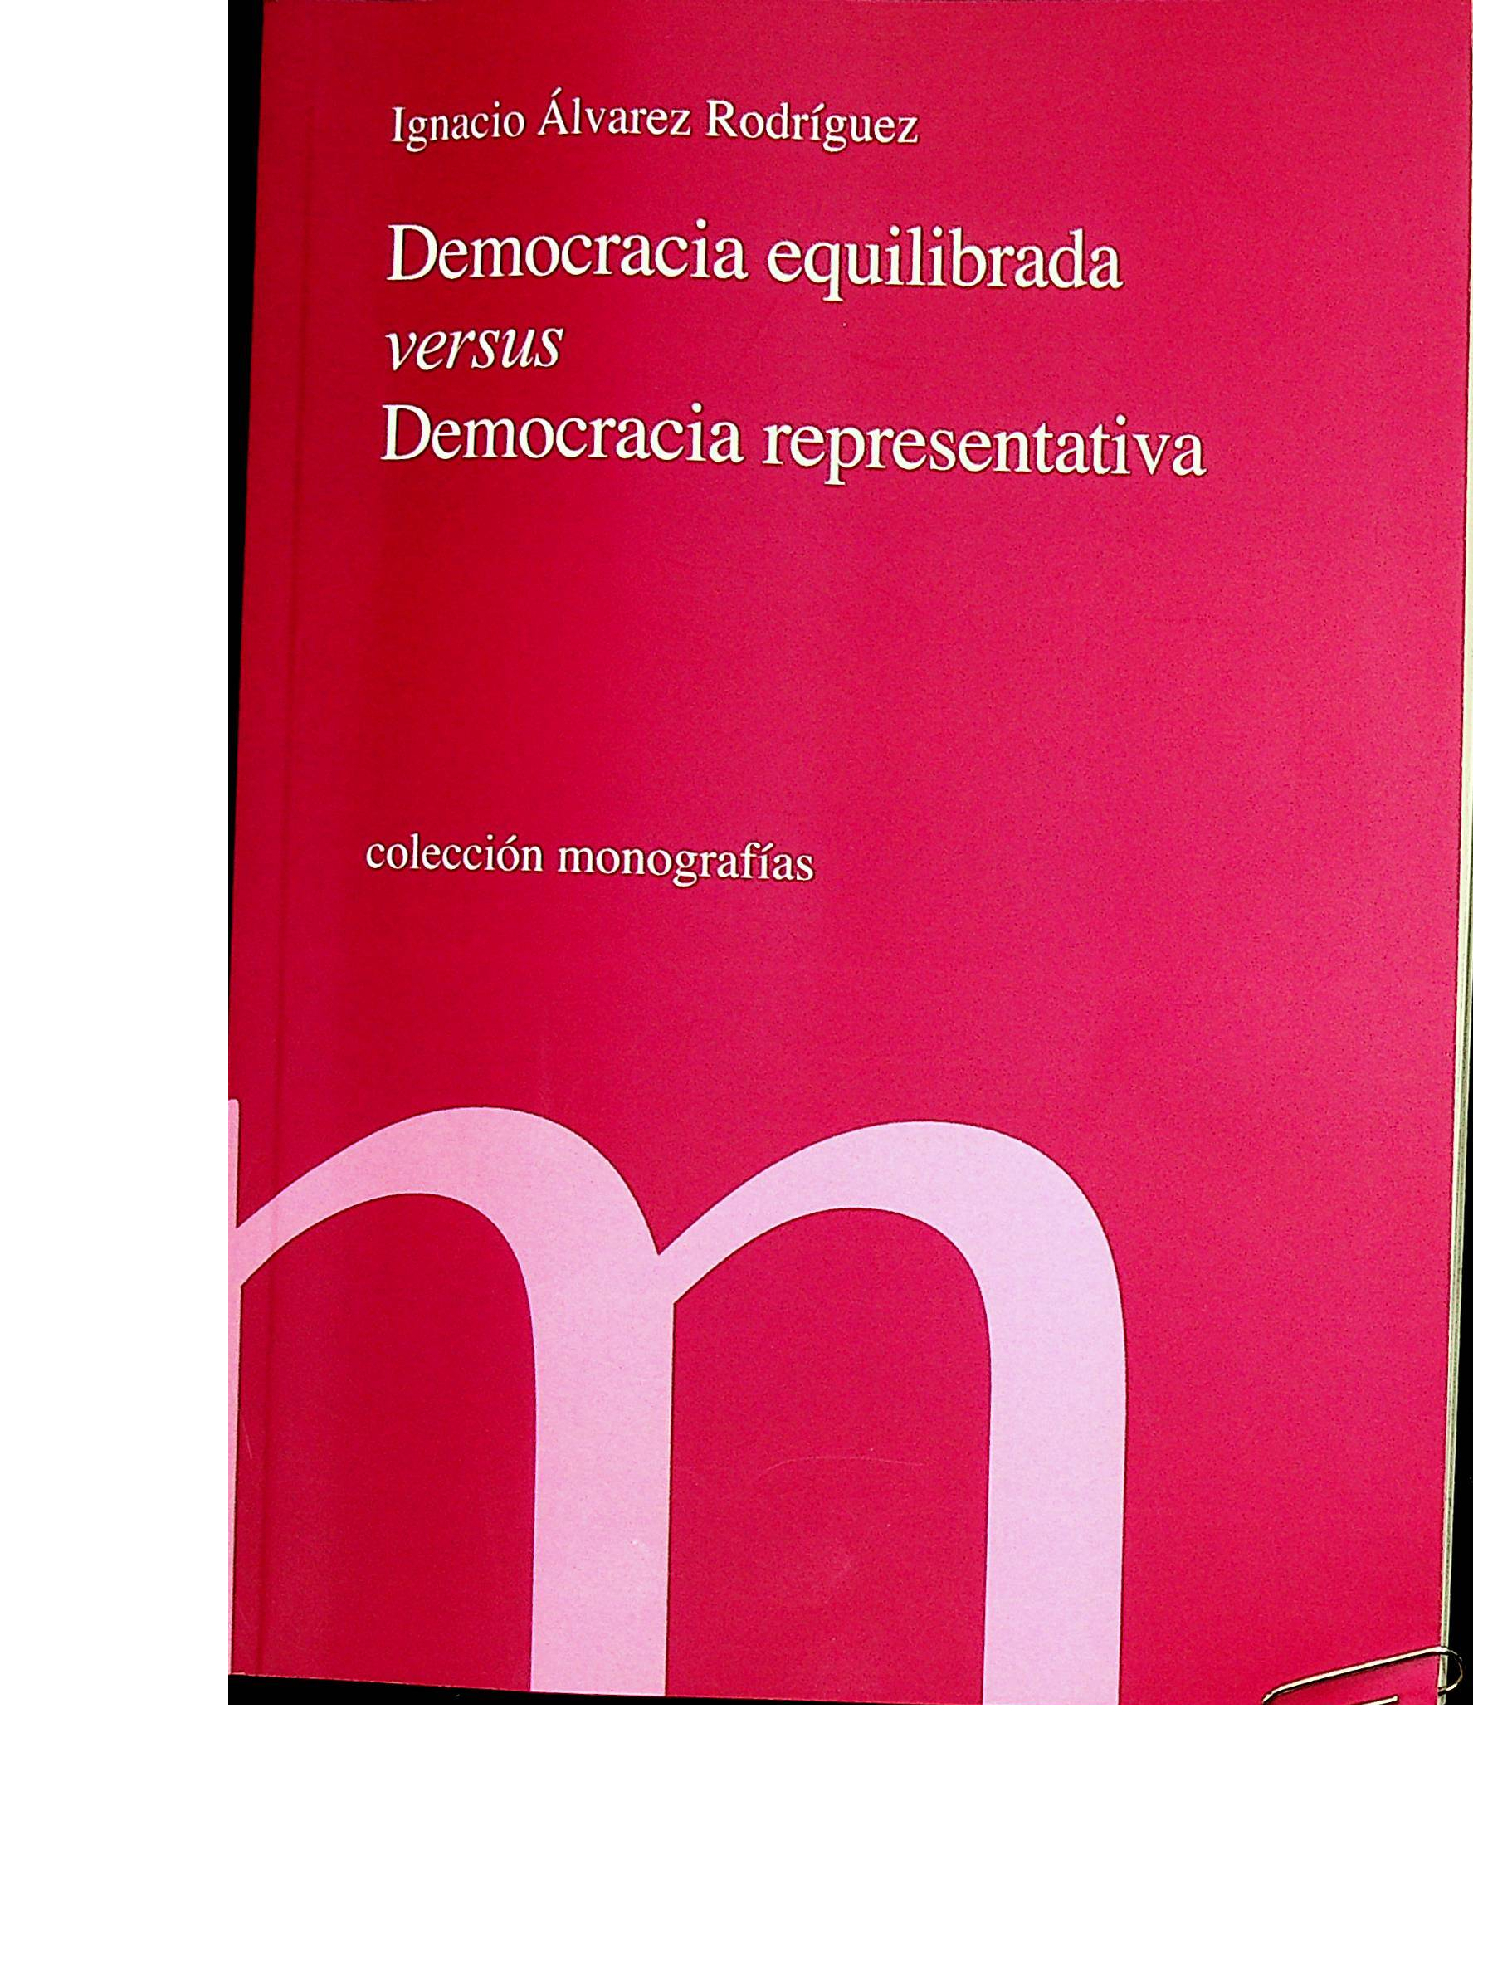 Imagen de portada del libro Democracia equilibrada "versus" democracia representativa